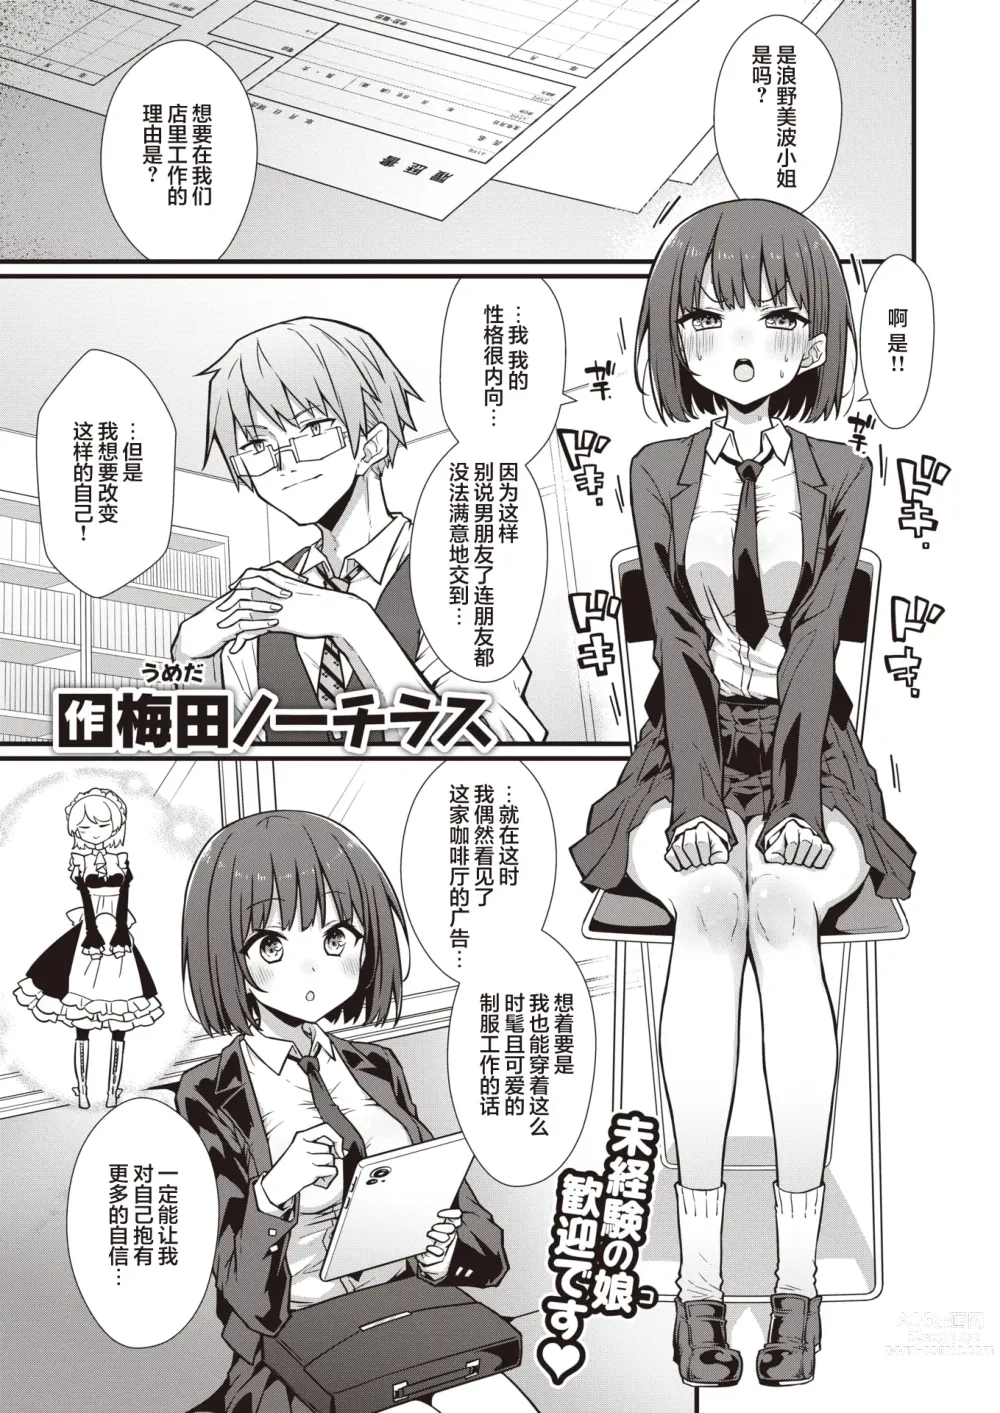 Page 2 of manga Hatarake! Minami-chan!